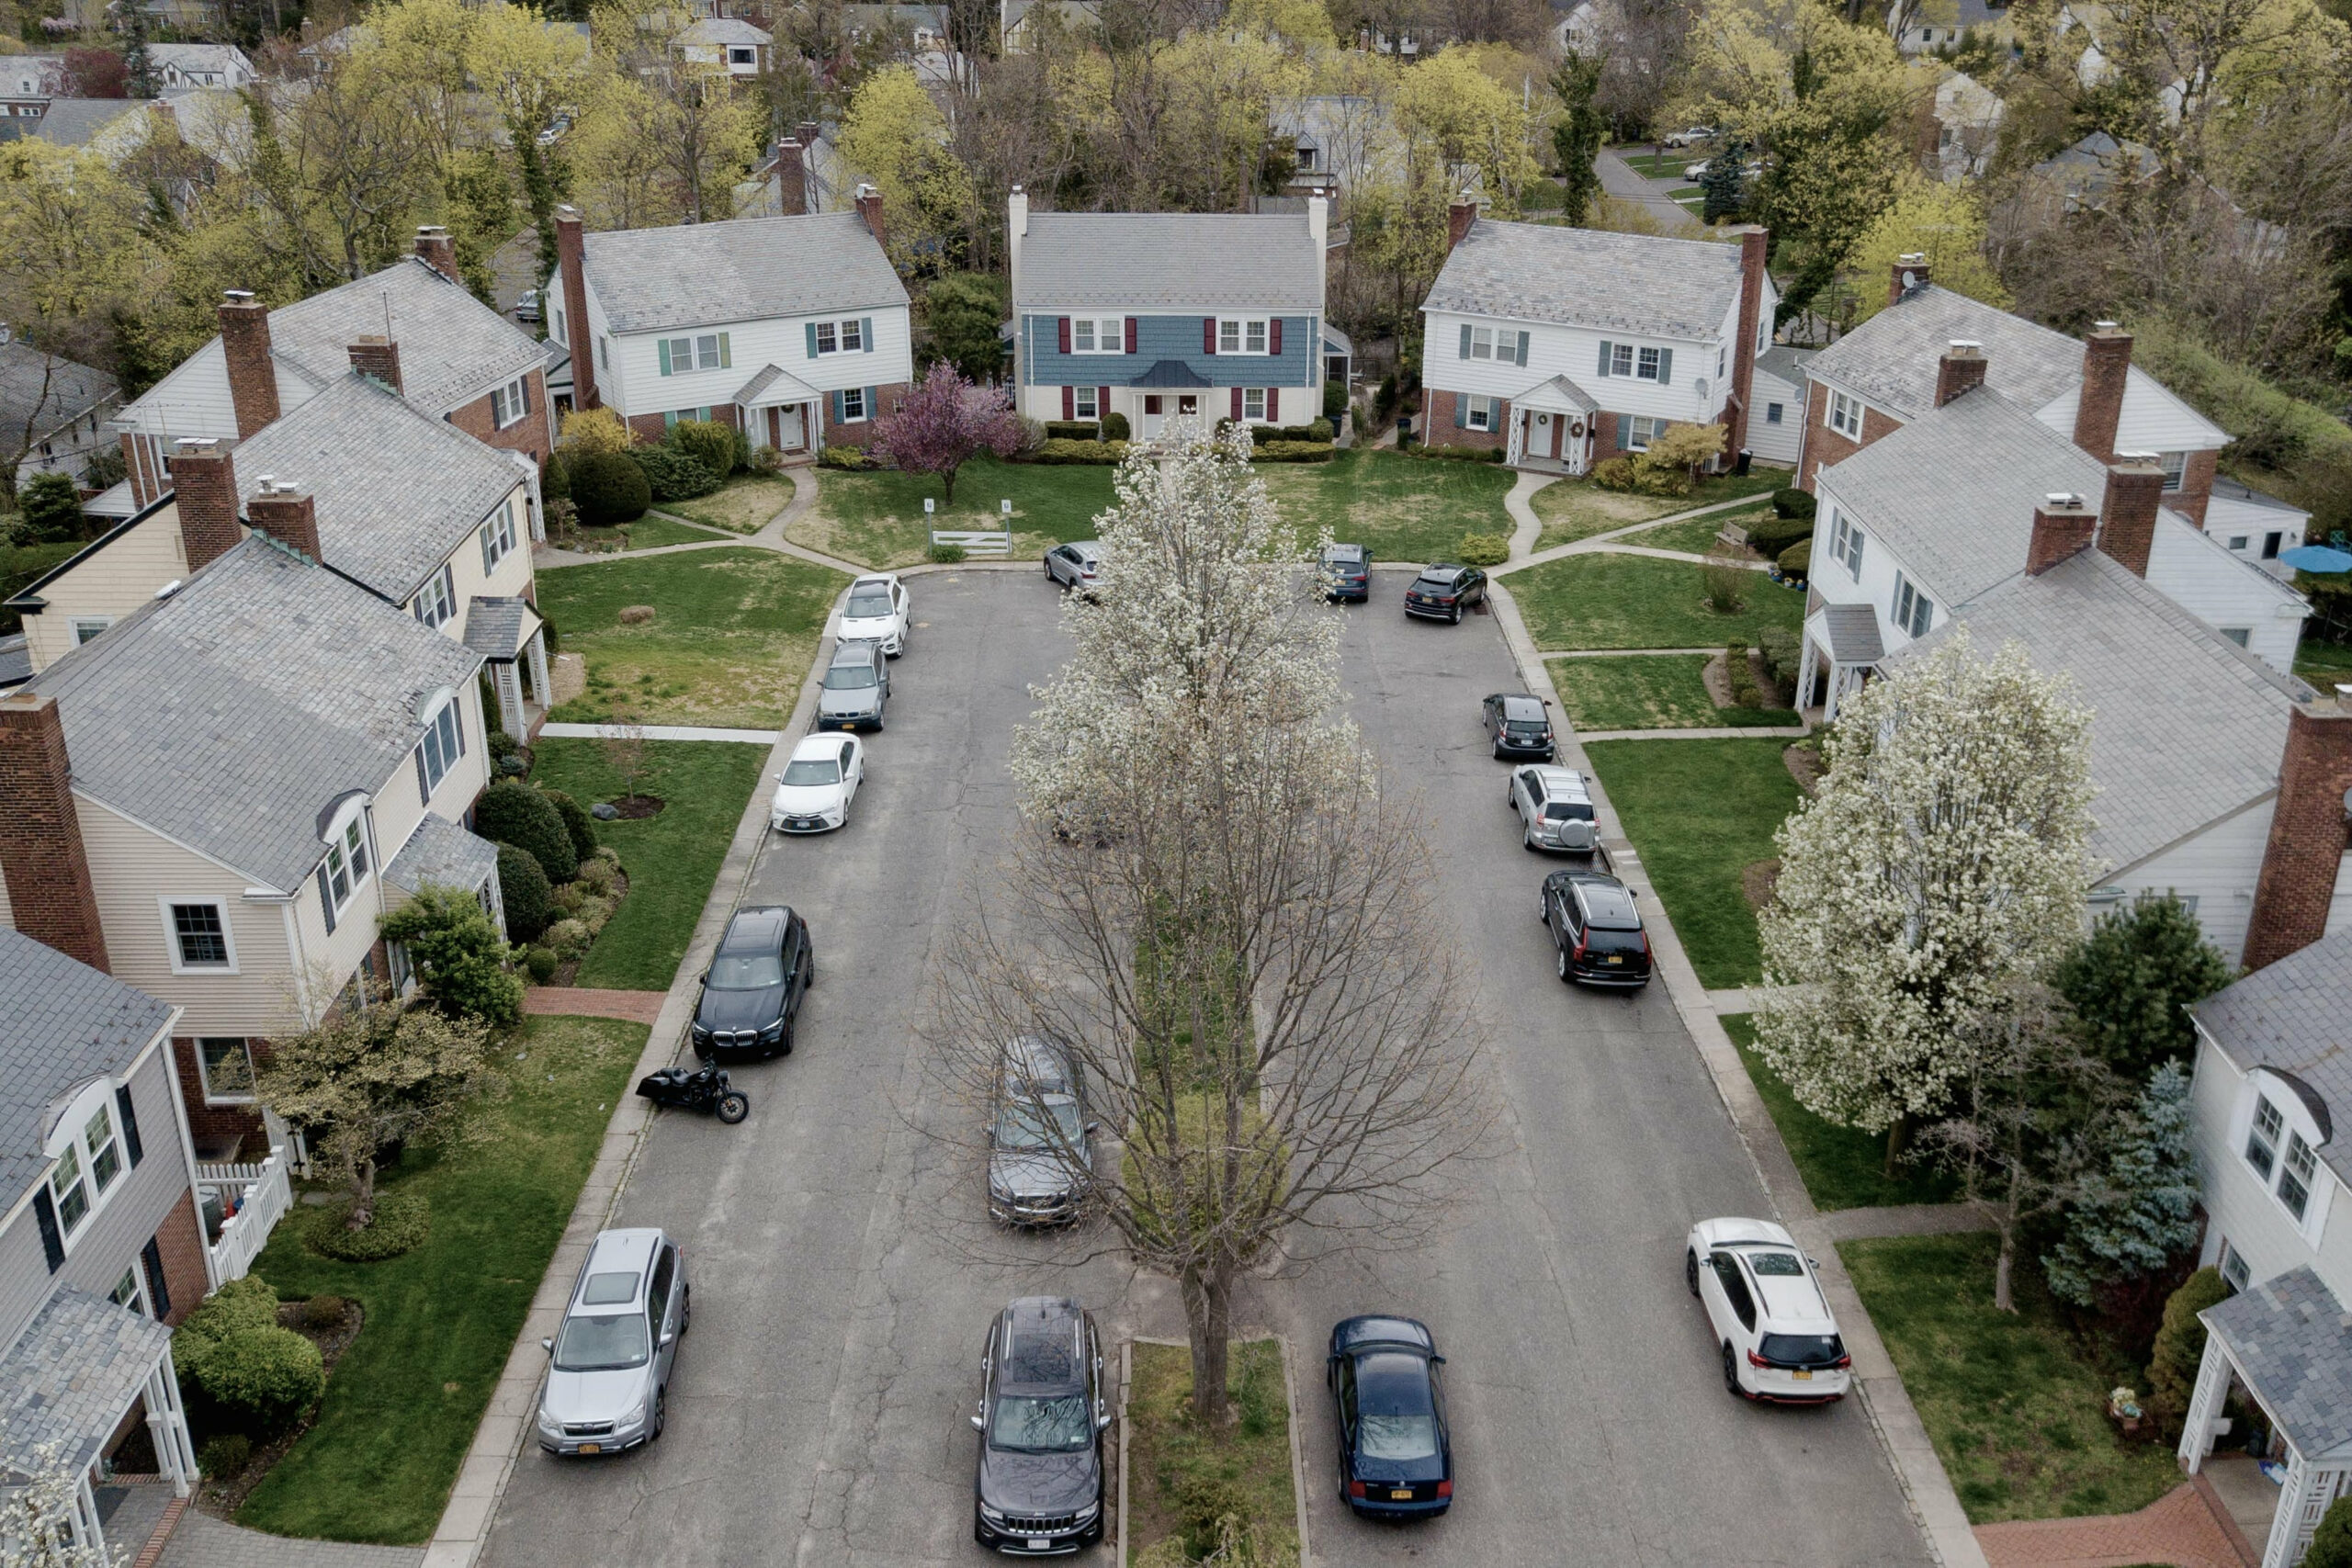 Ένα 10ετές ράλι στις τιμές των κατοικιών στις ΗΠΑ μπορεί να πλησιάζει στο τέλος του, λέει ο Robert Shiller του Yale